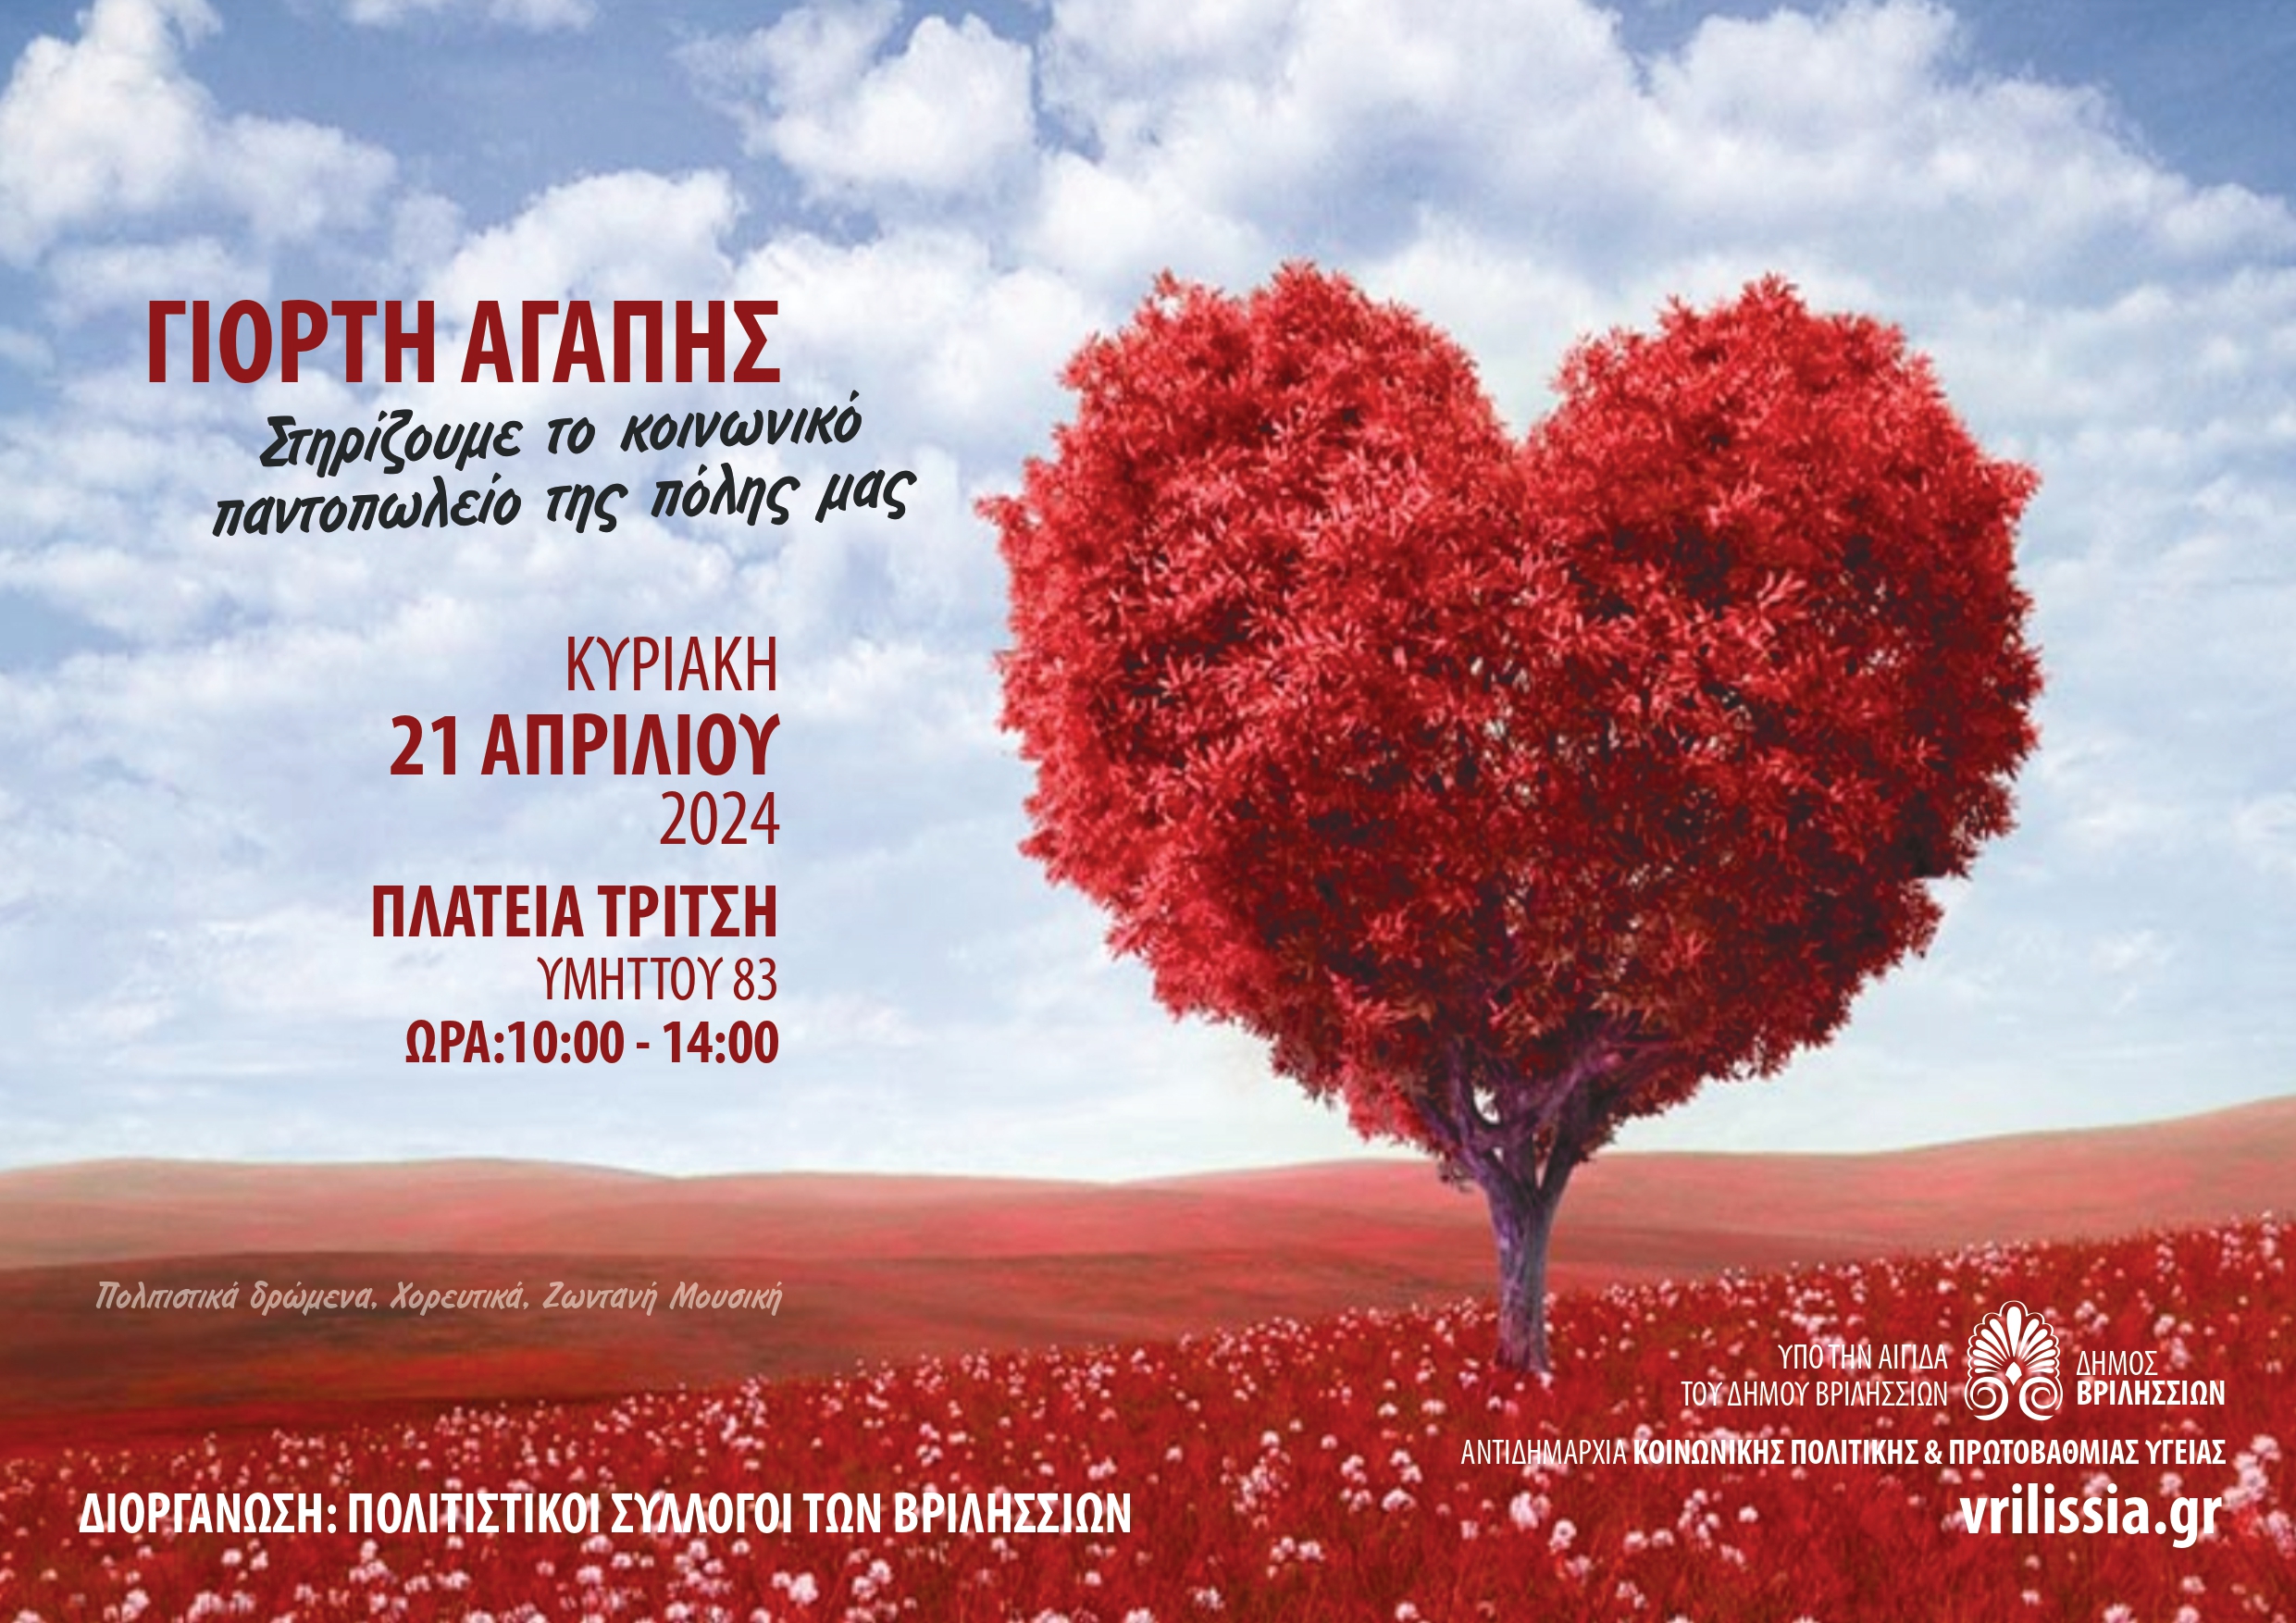 Γιορτή Αγάπης: Την Κυριακή 21 Απριλίου οι σύλλογοι της πόλης μας ενώνουν τις δυνάμεις τους για καλό σκοπό 